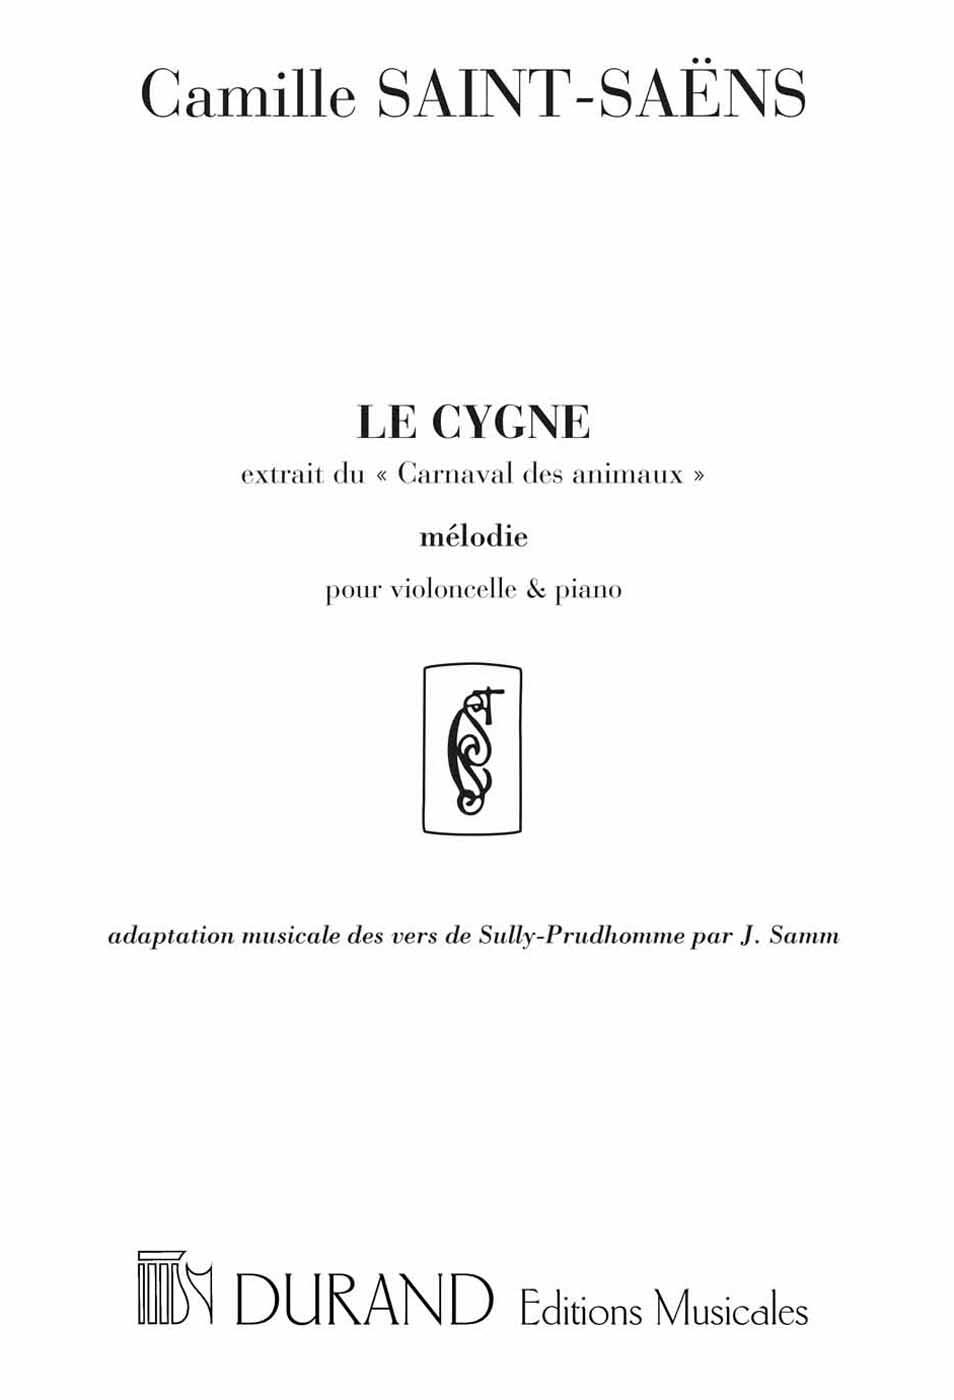 Le Cygne Extrait du Carnaval des Animaux Cello und Klavier / adaptation musicale des vers de Sully Prudhomme par J. Samm : photo 1